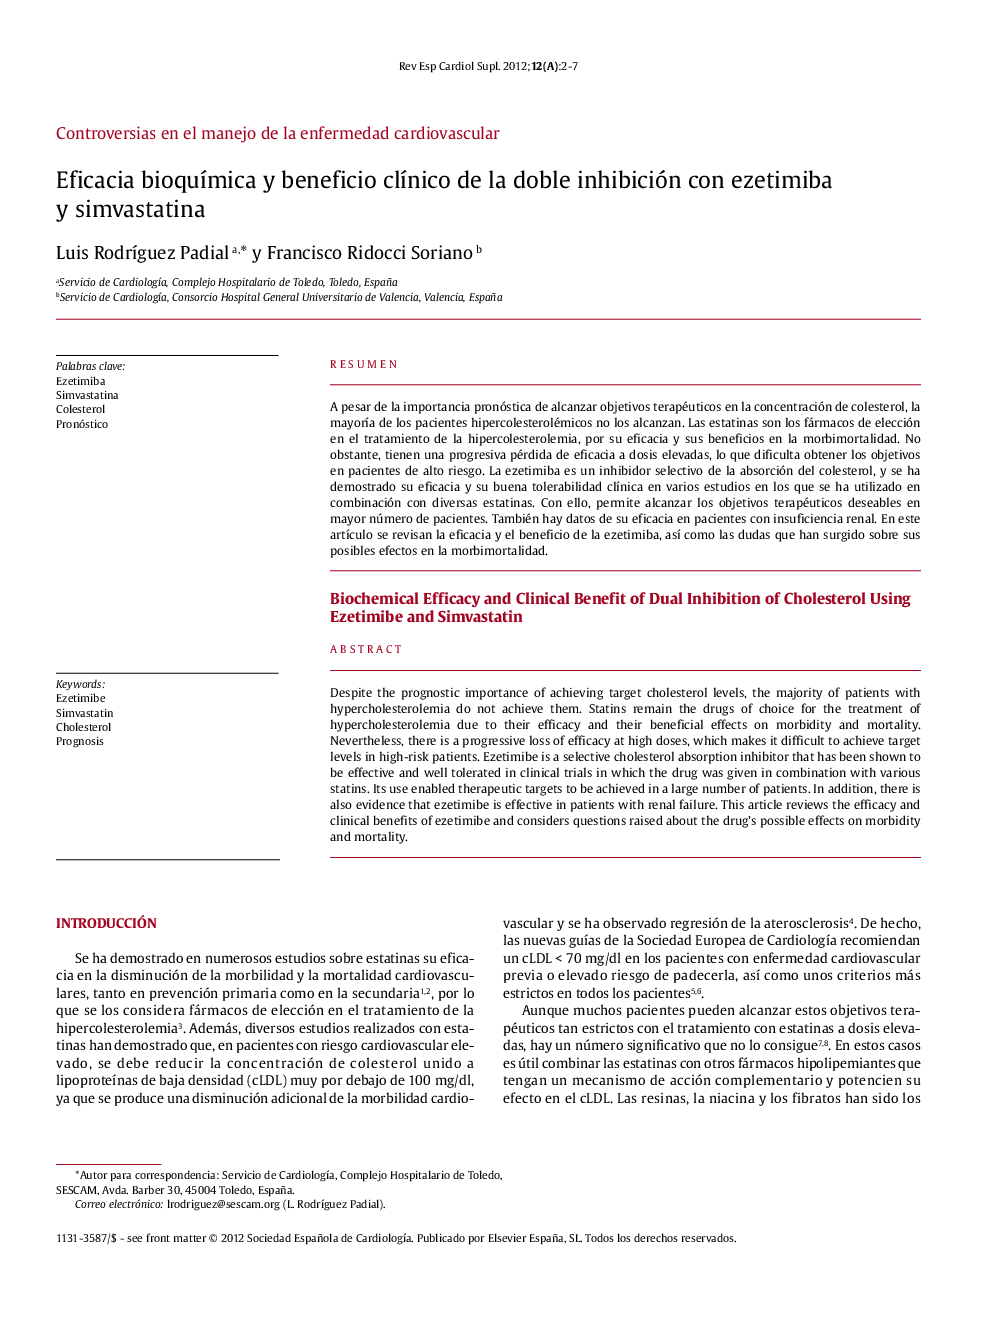 Eficacia bioquímica y beneficio clínico de la doble inhibición con ezetimiba y simvastatina